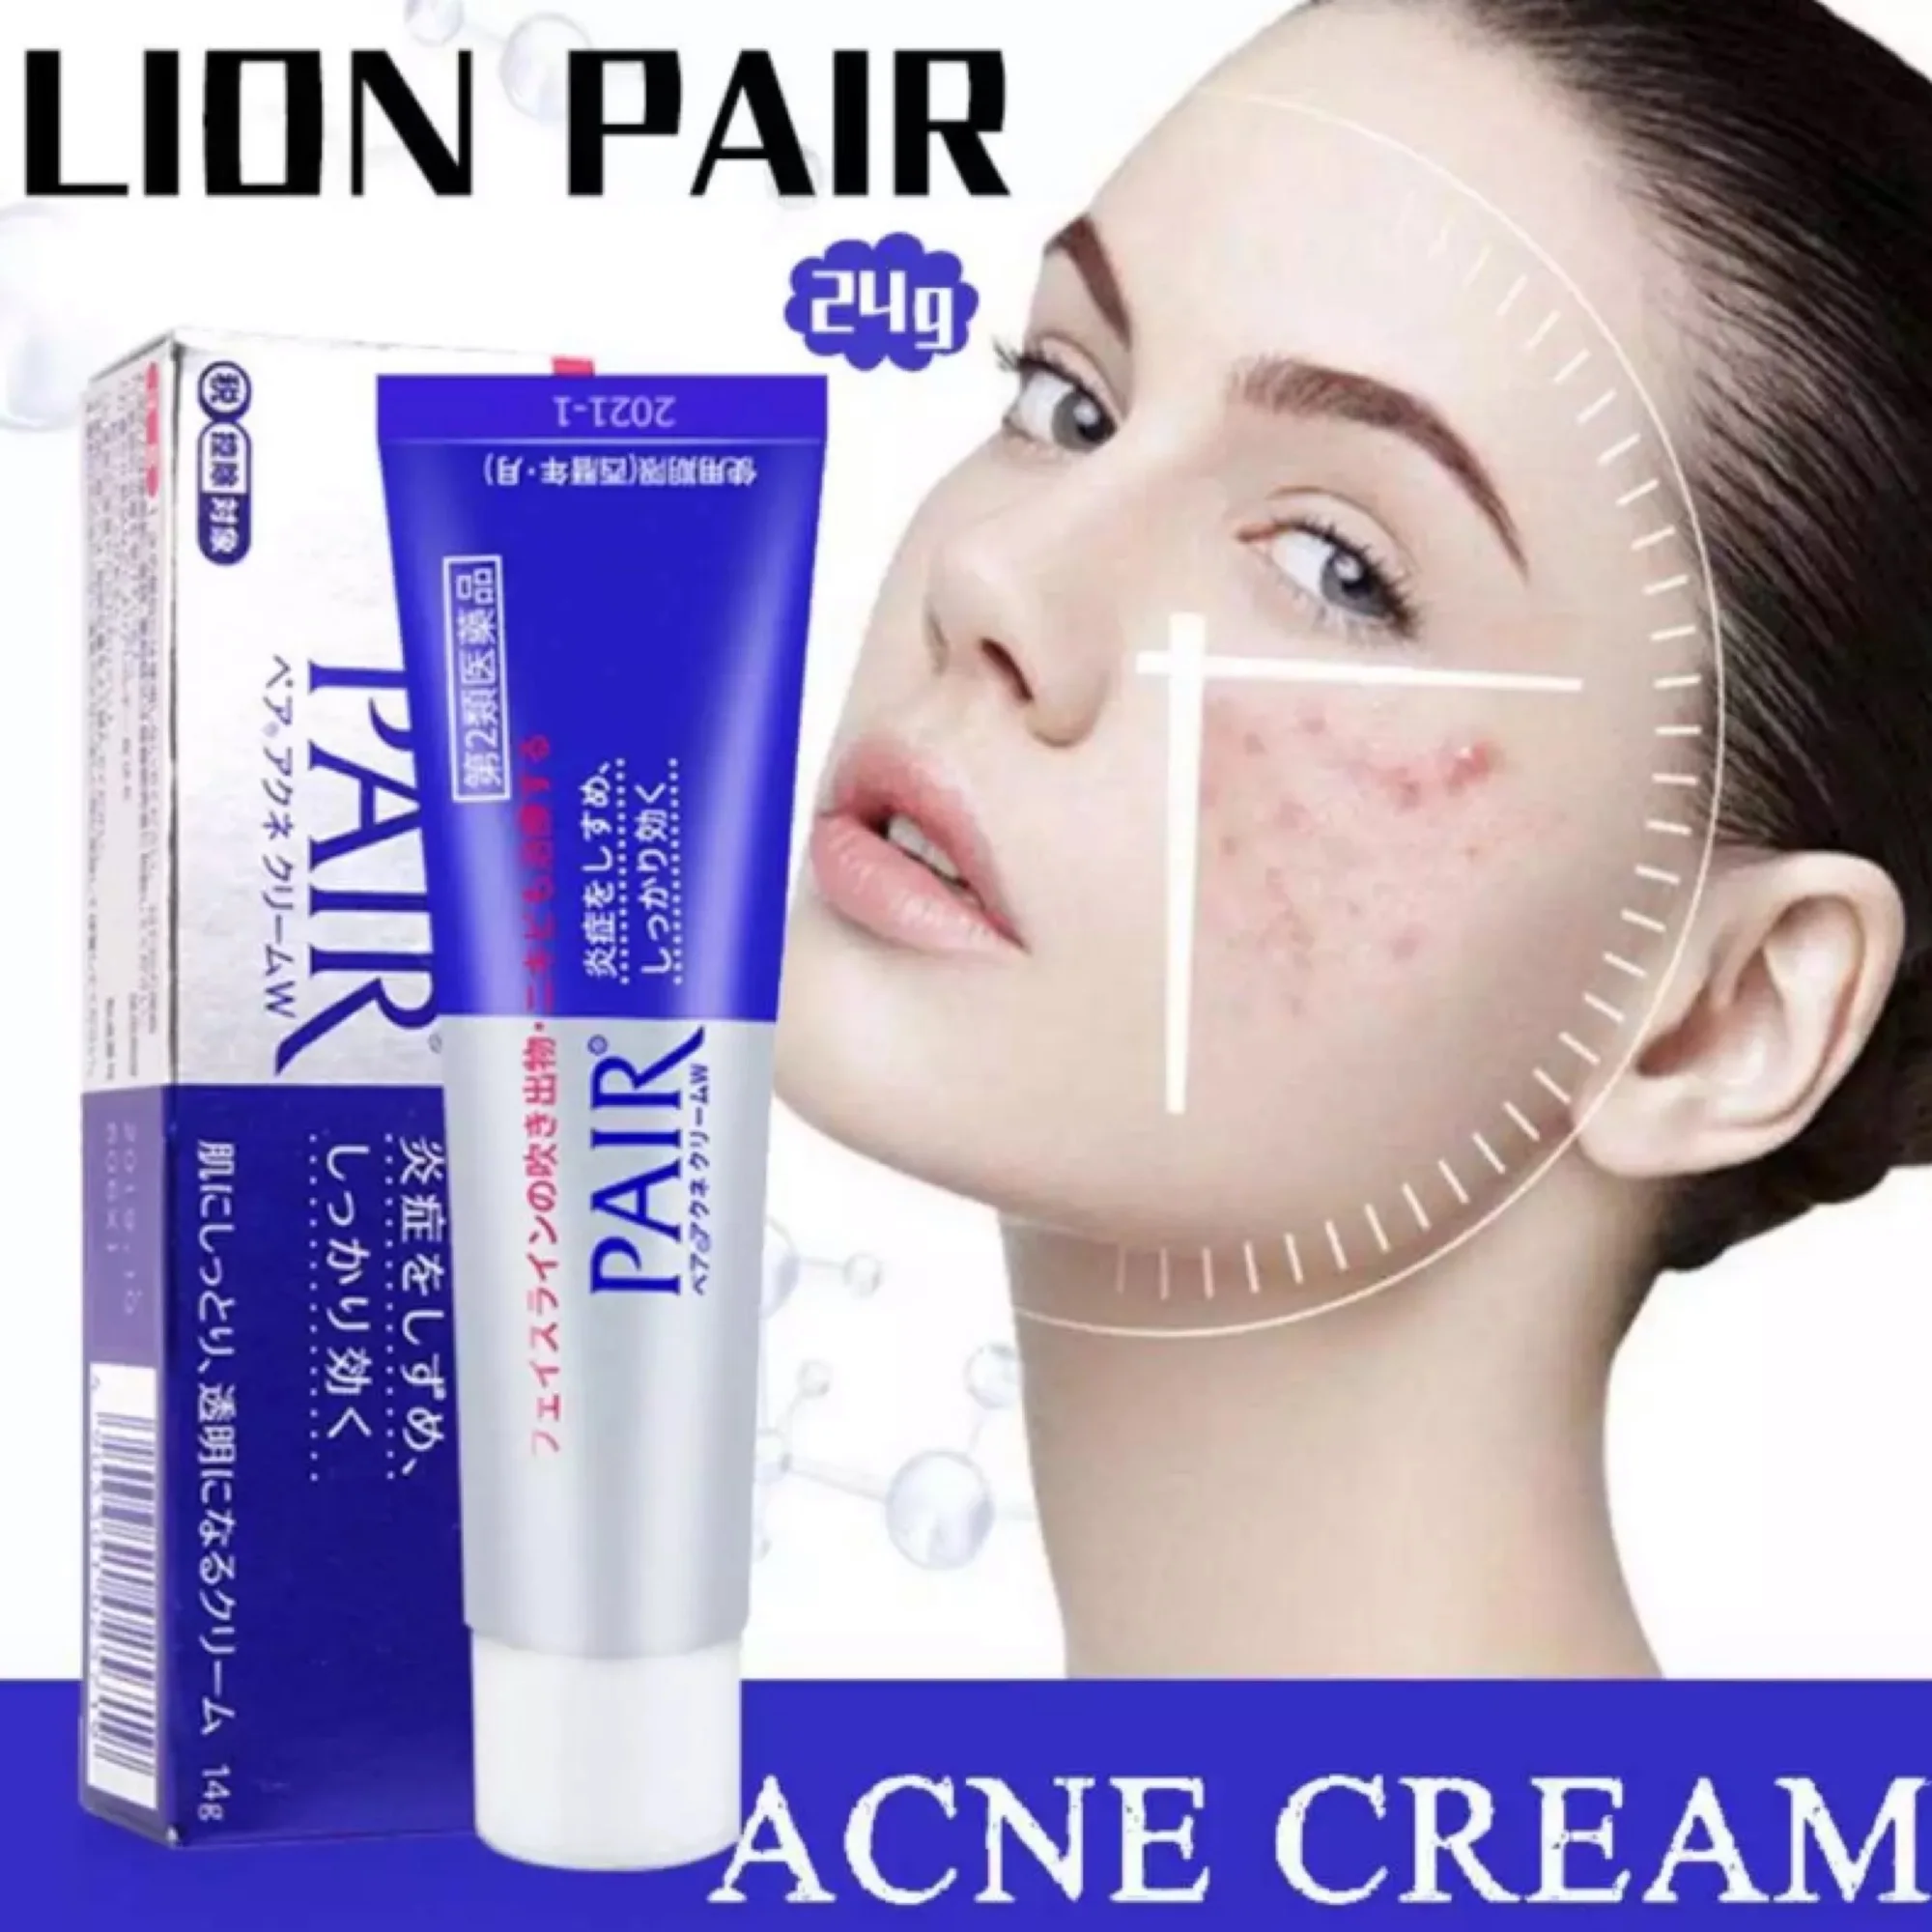 ครีมแต้มสิว Lion Pair Acne Cream จากญี่ปุ่น 24 กรัม ครีมรักษาสิว